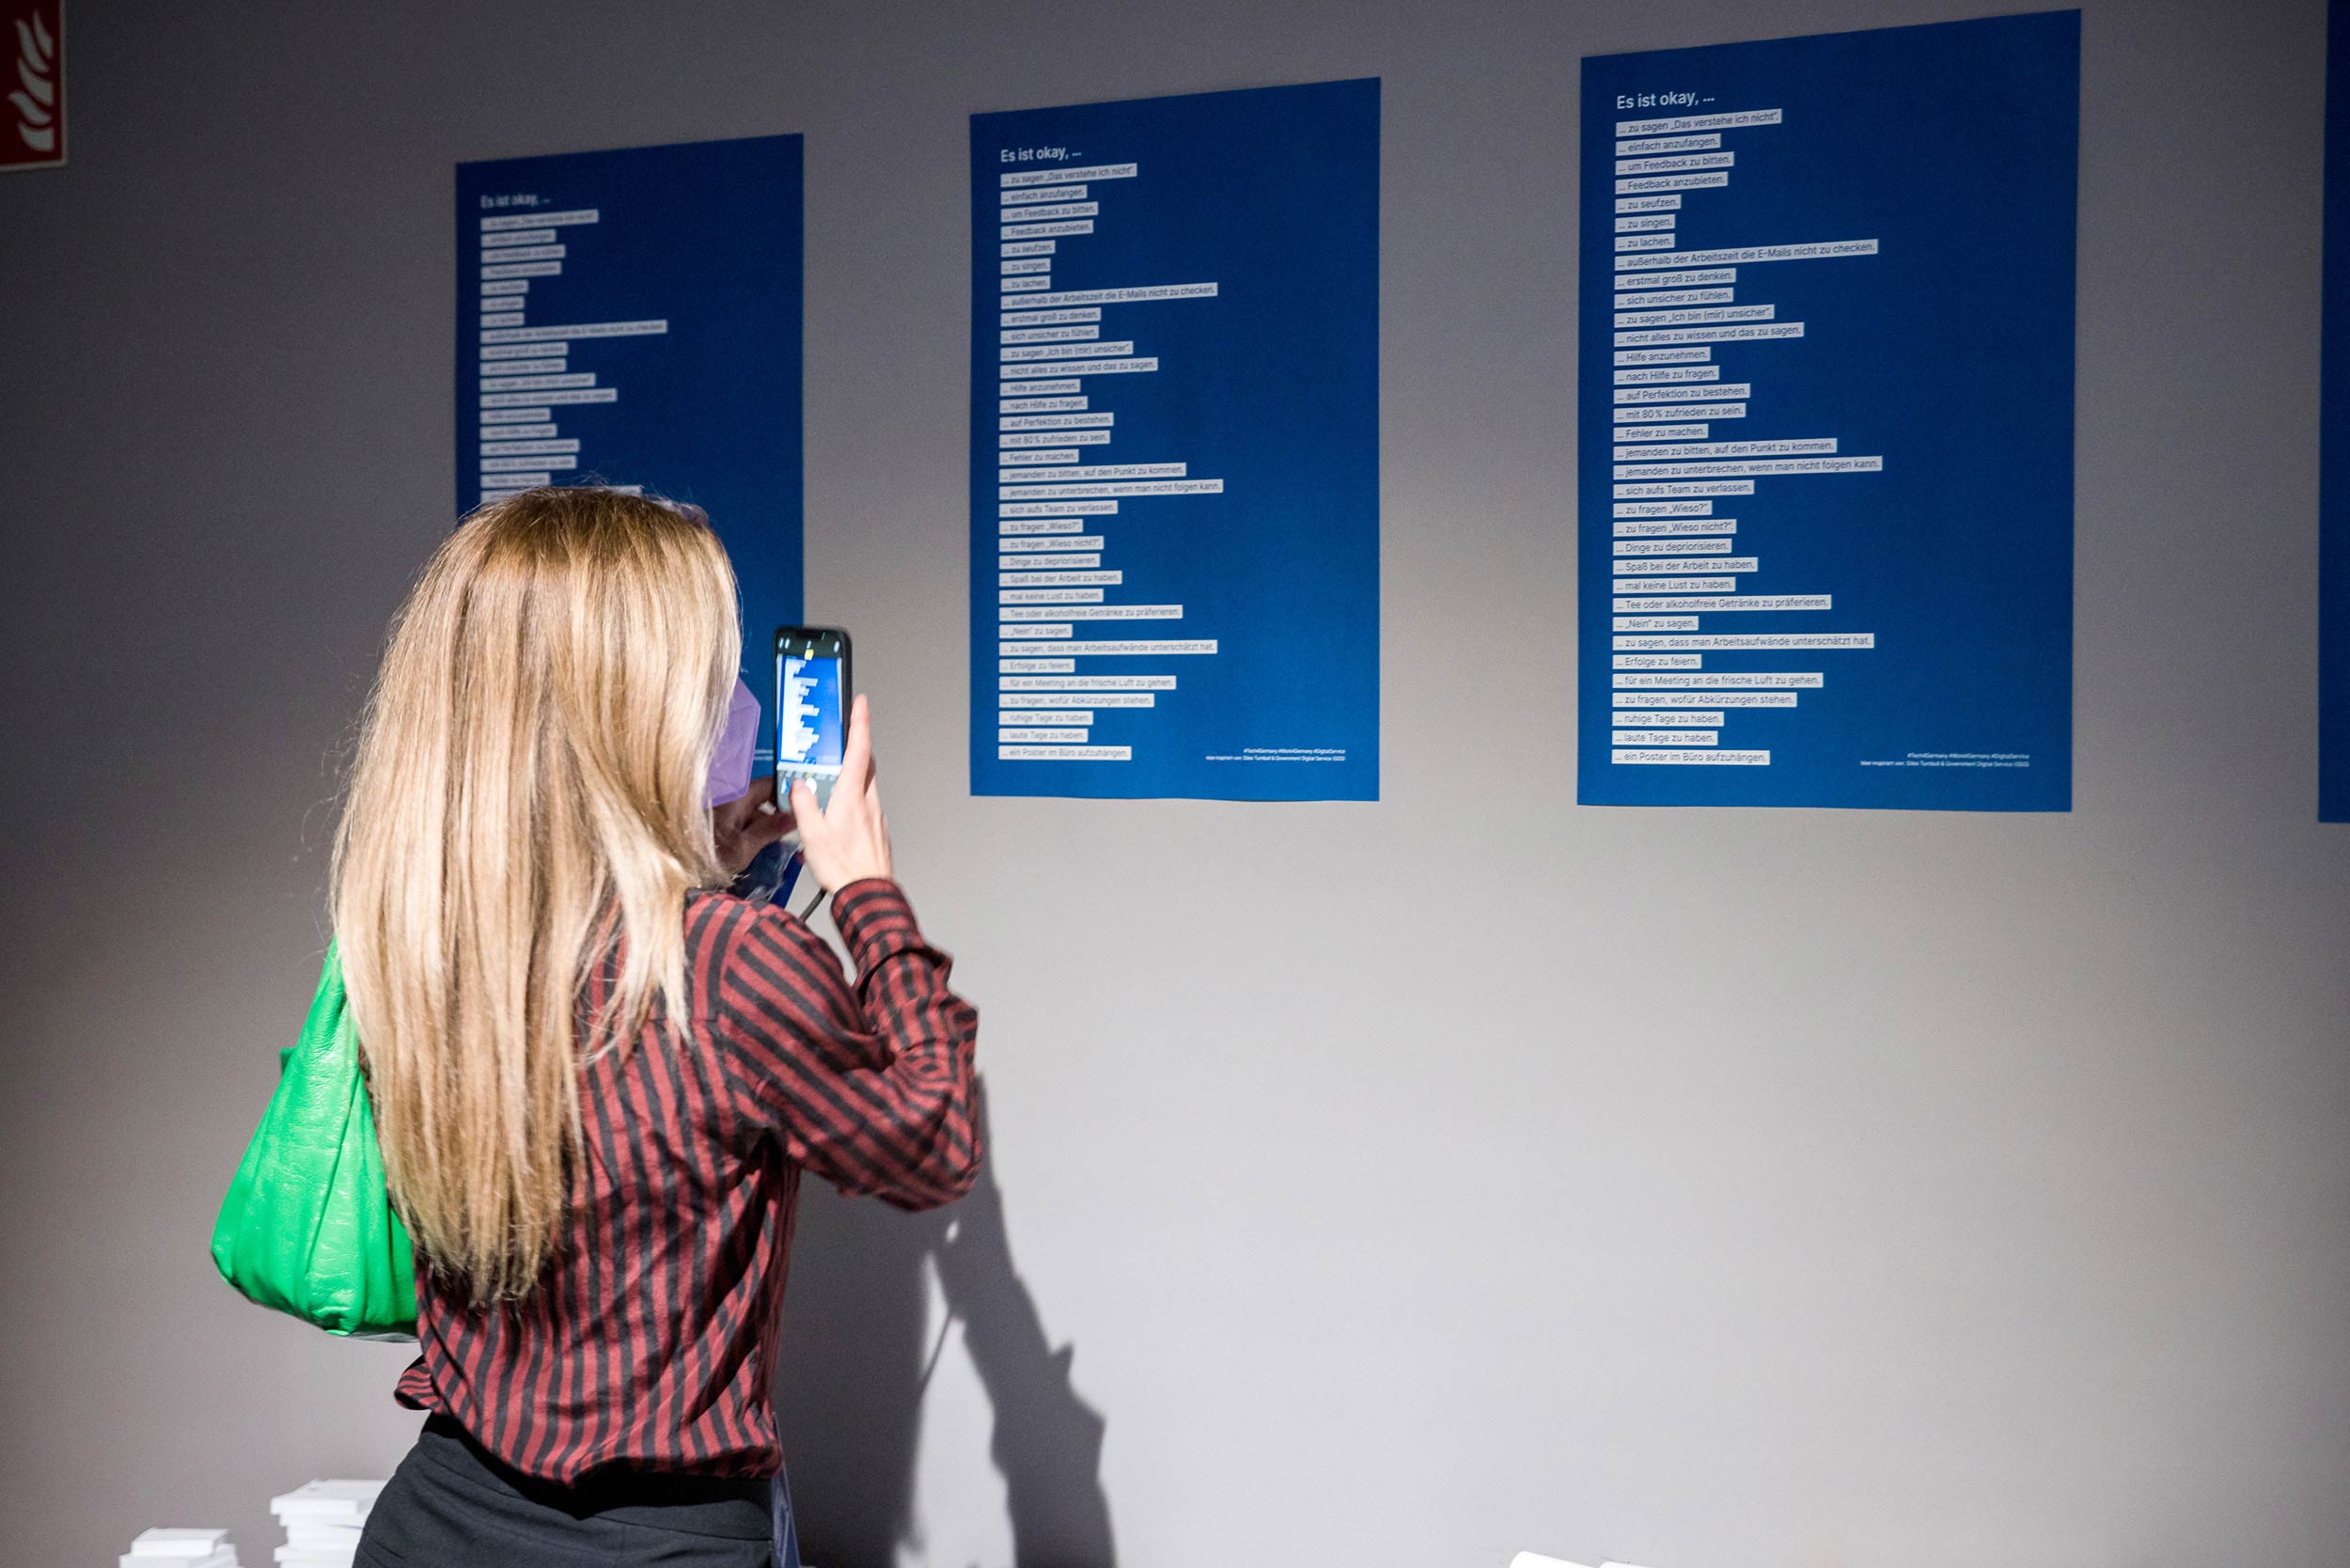 Eine Person mit langen hellen Haaren steht vor drei gleichen blauen Postern, die sie mit ihrem Telefon fotografiert – die Poster enthalten zwei Dutzend Zeilen Text.